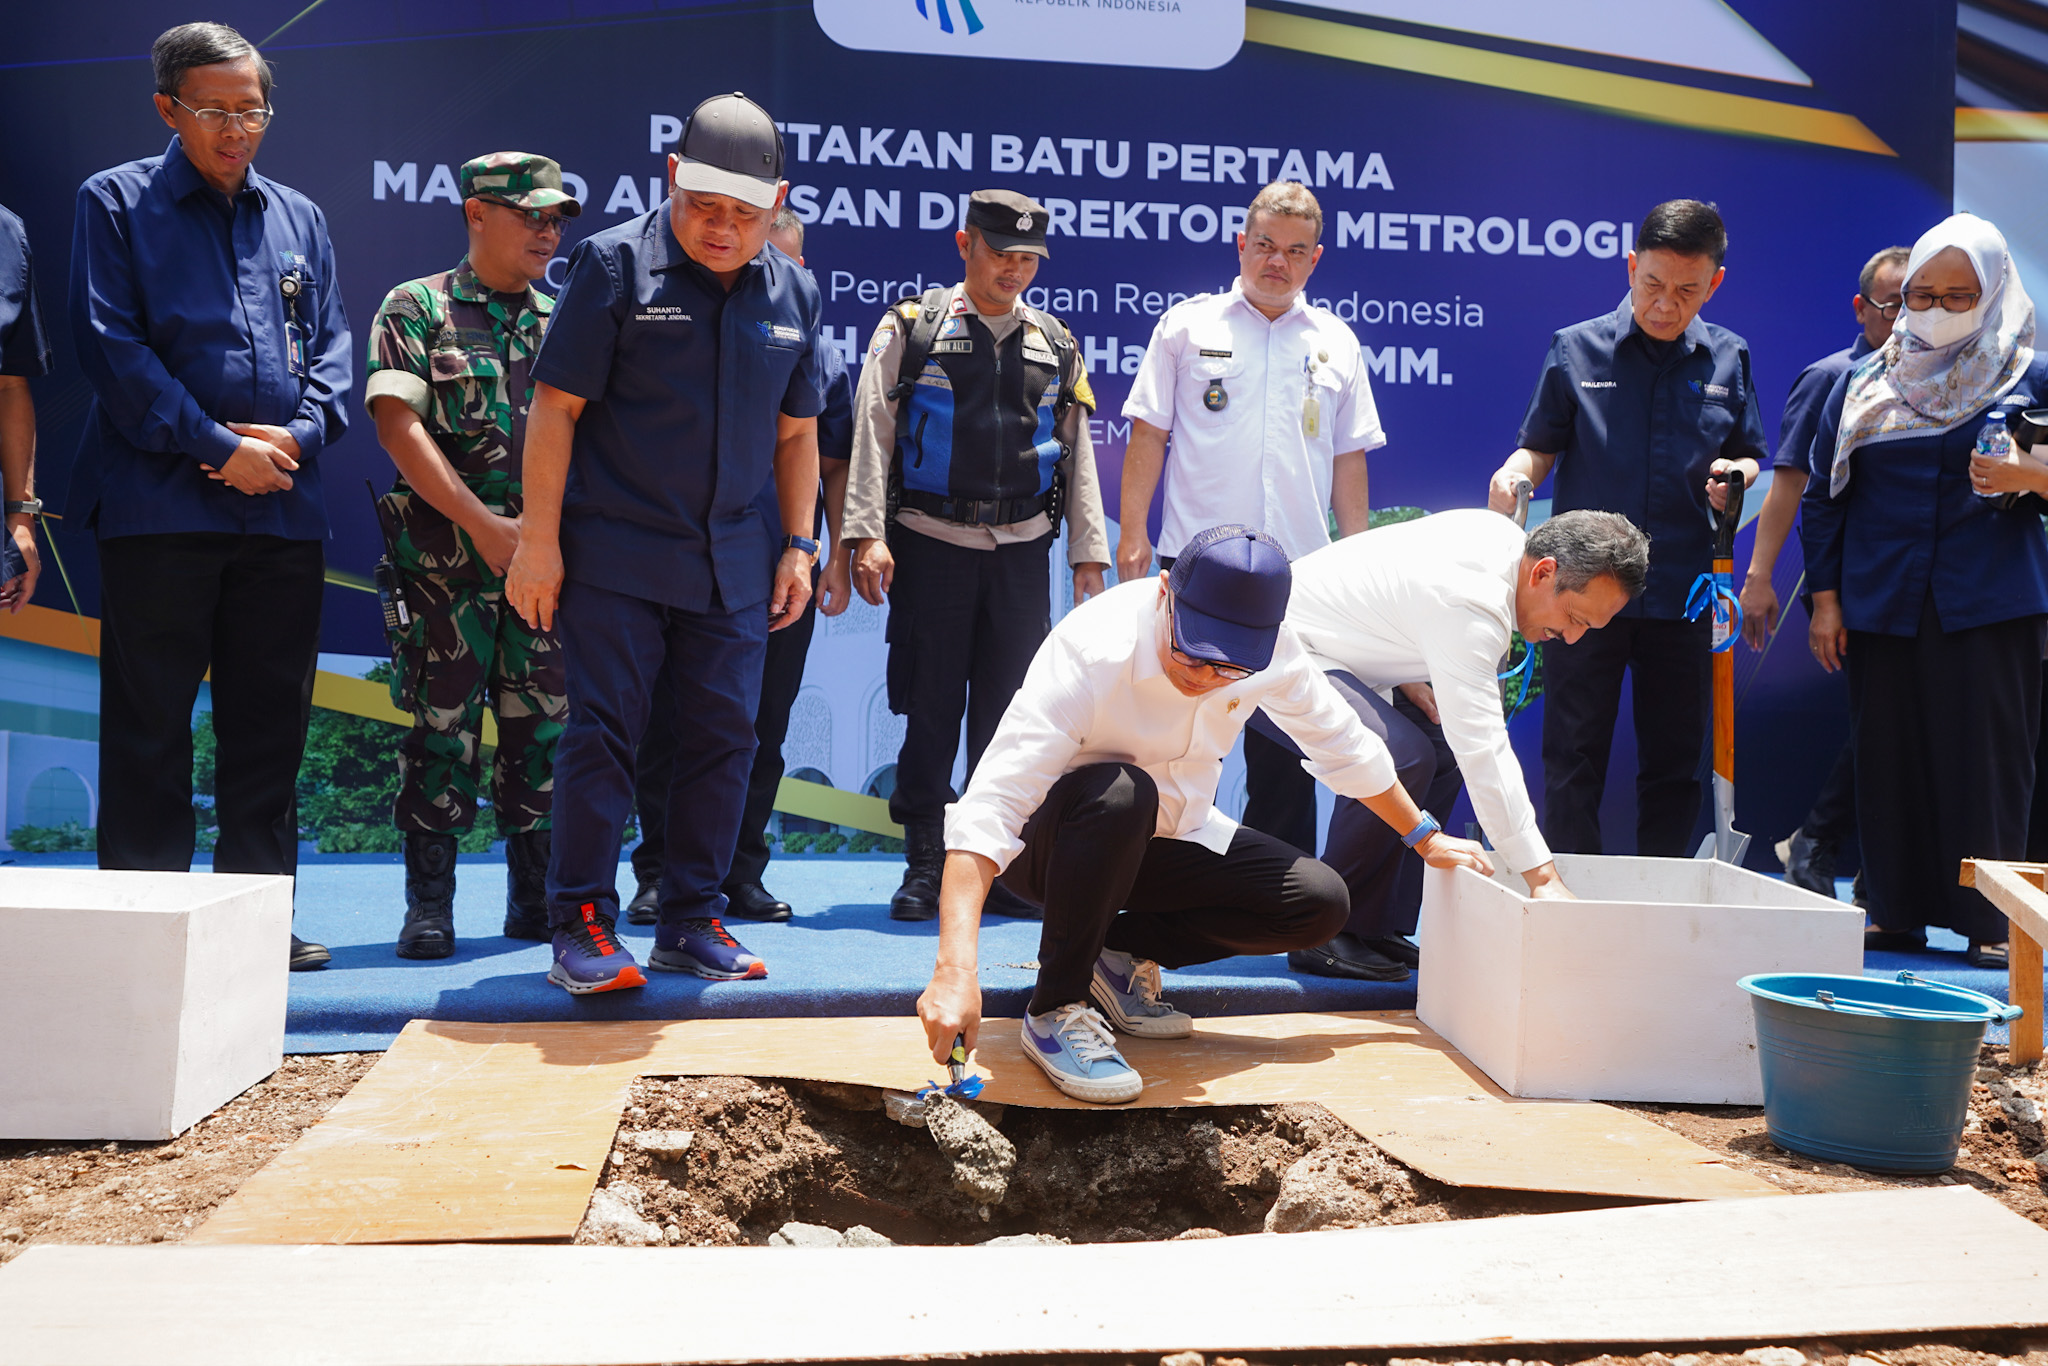 Peletakan Batu Pertama Pembangunan Masjid Al Ihsan di Direktorat Metrologi, Bandung